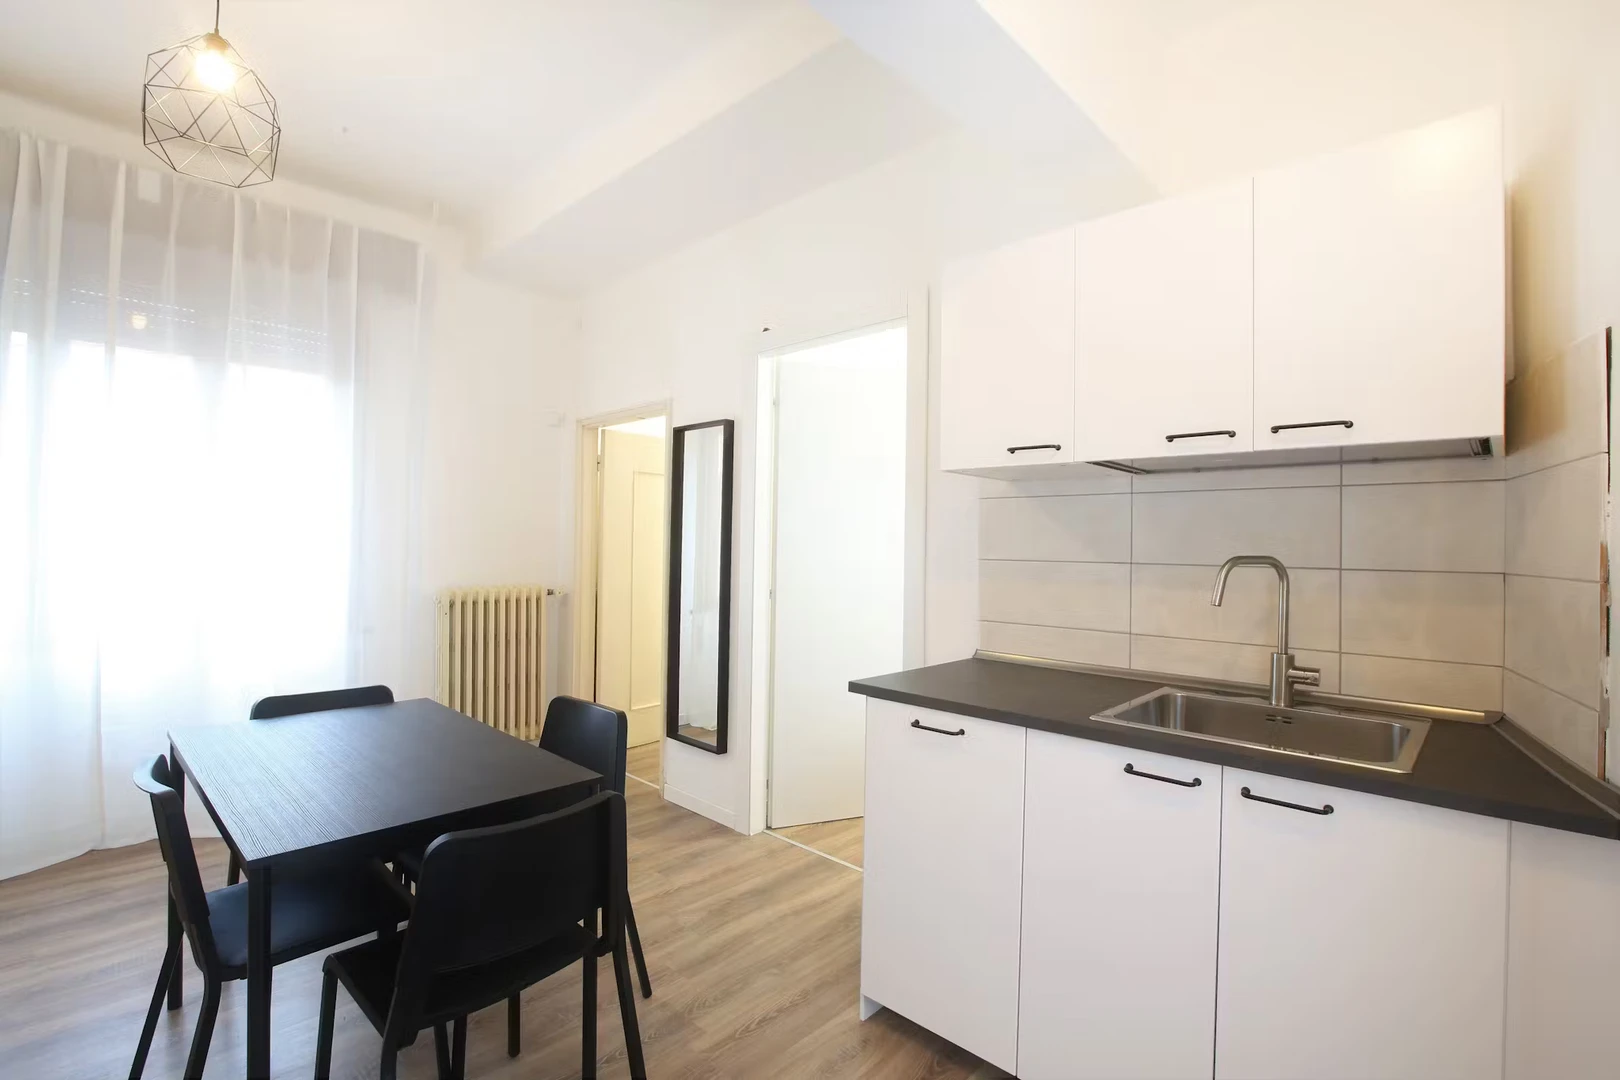 Alquiler de habitaciones por meses en Módena